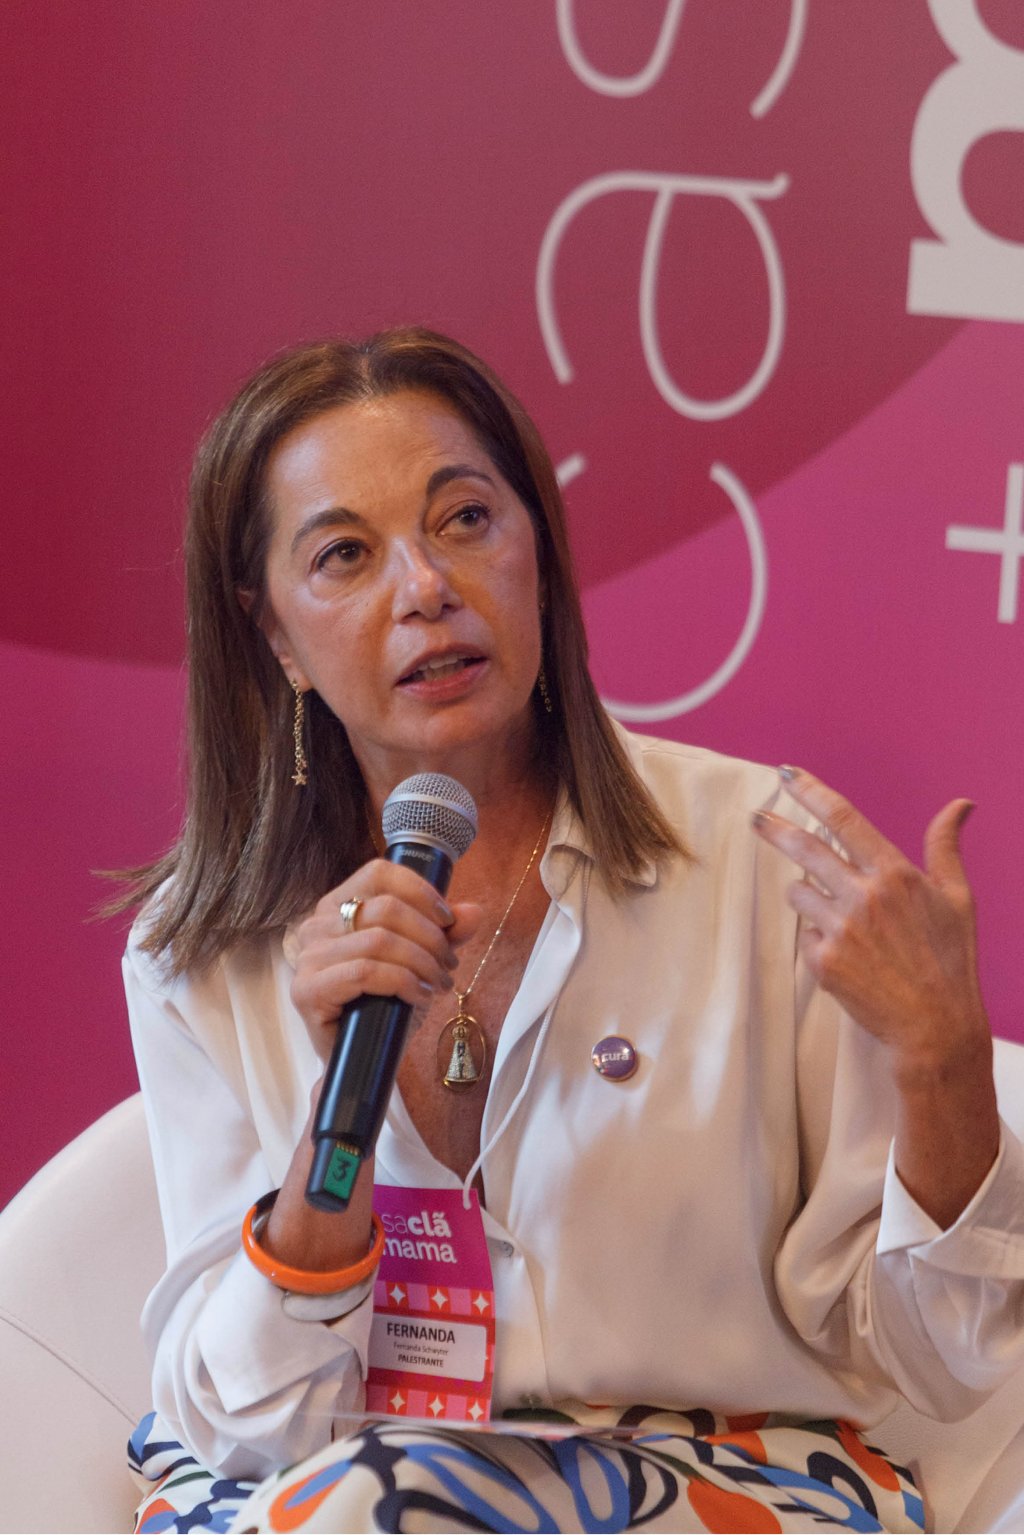 Casa Clã + Mama incentivou a união de forças na prevenção do câncer de mama